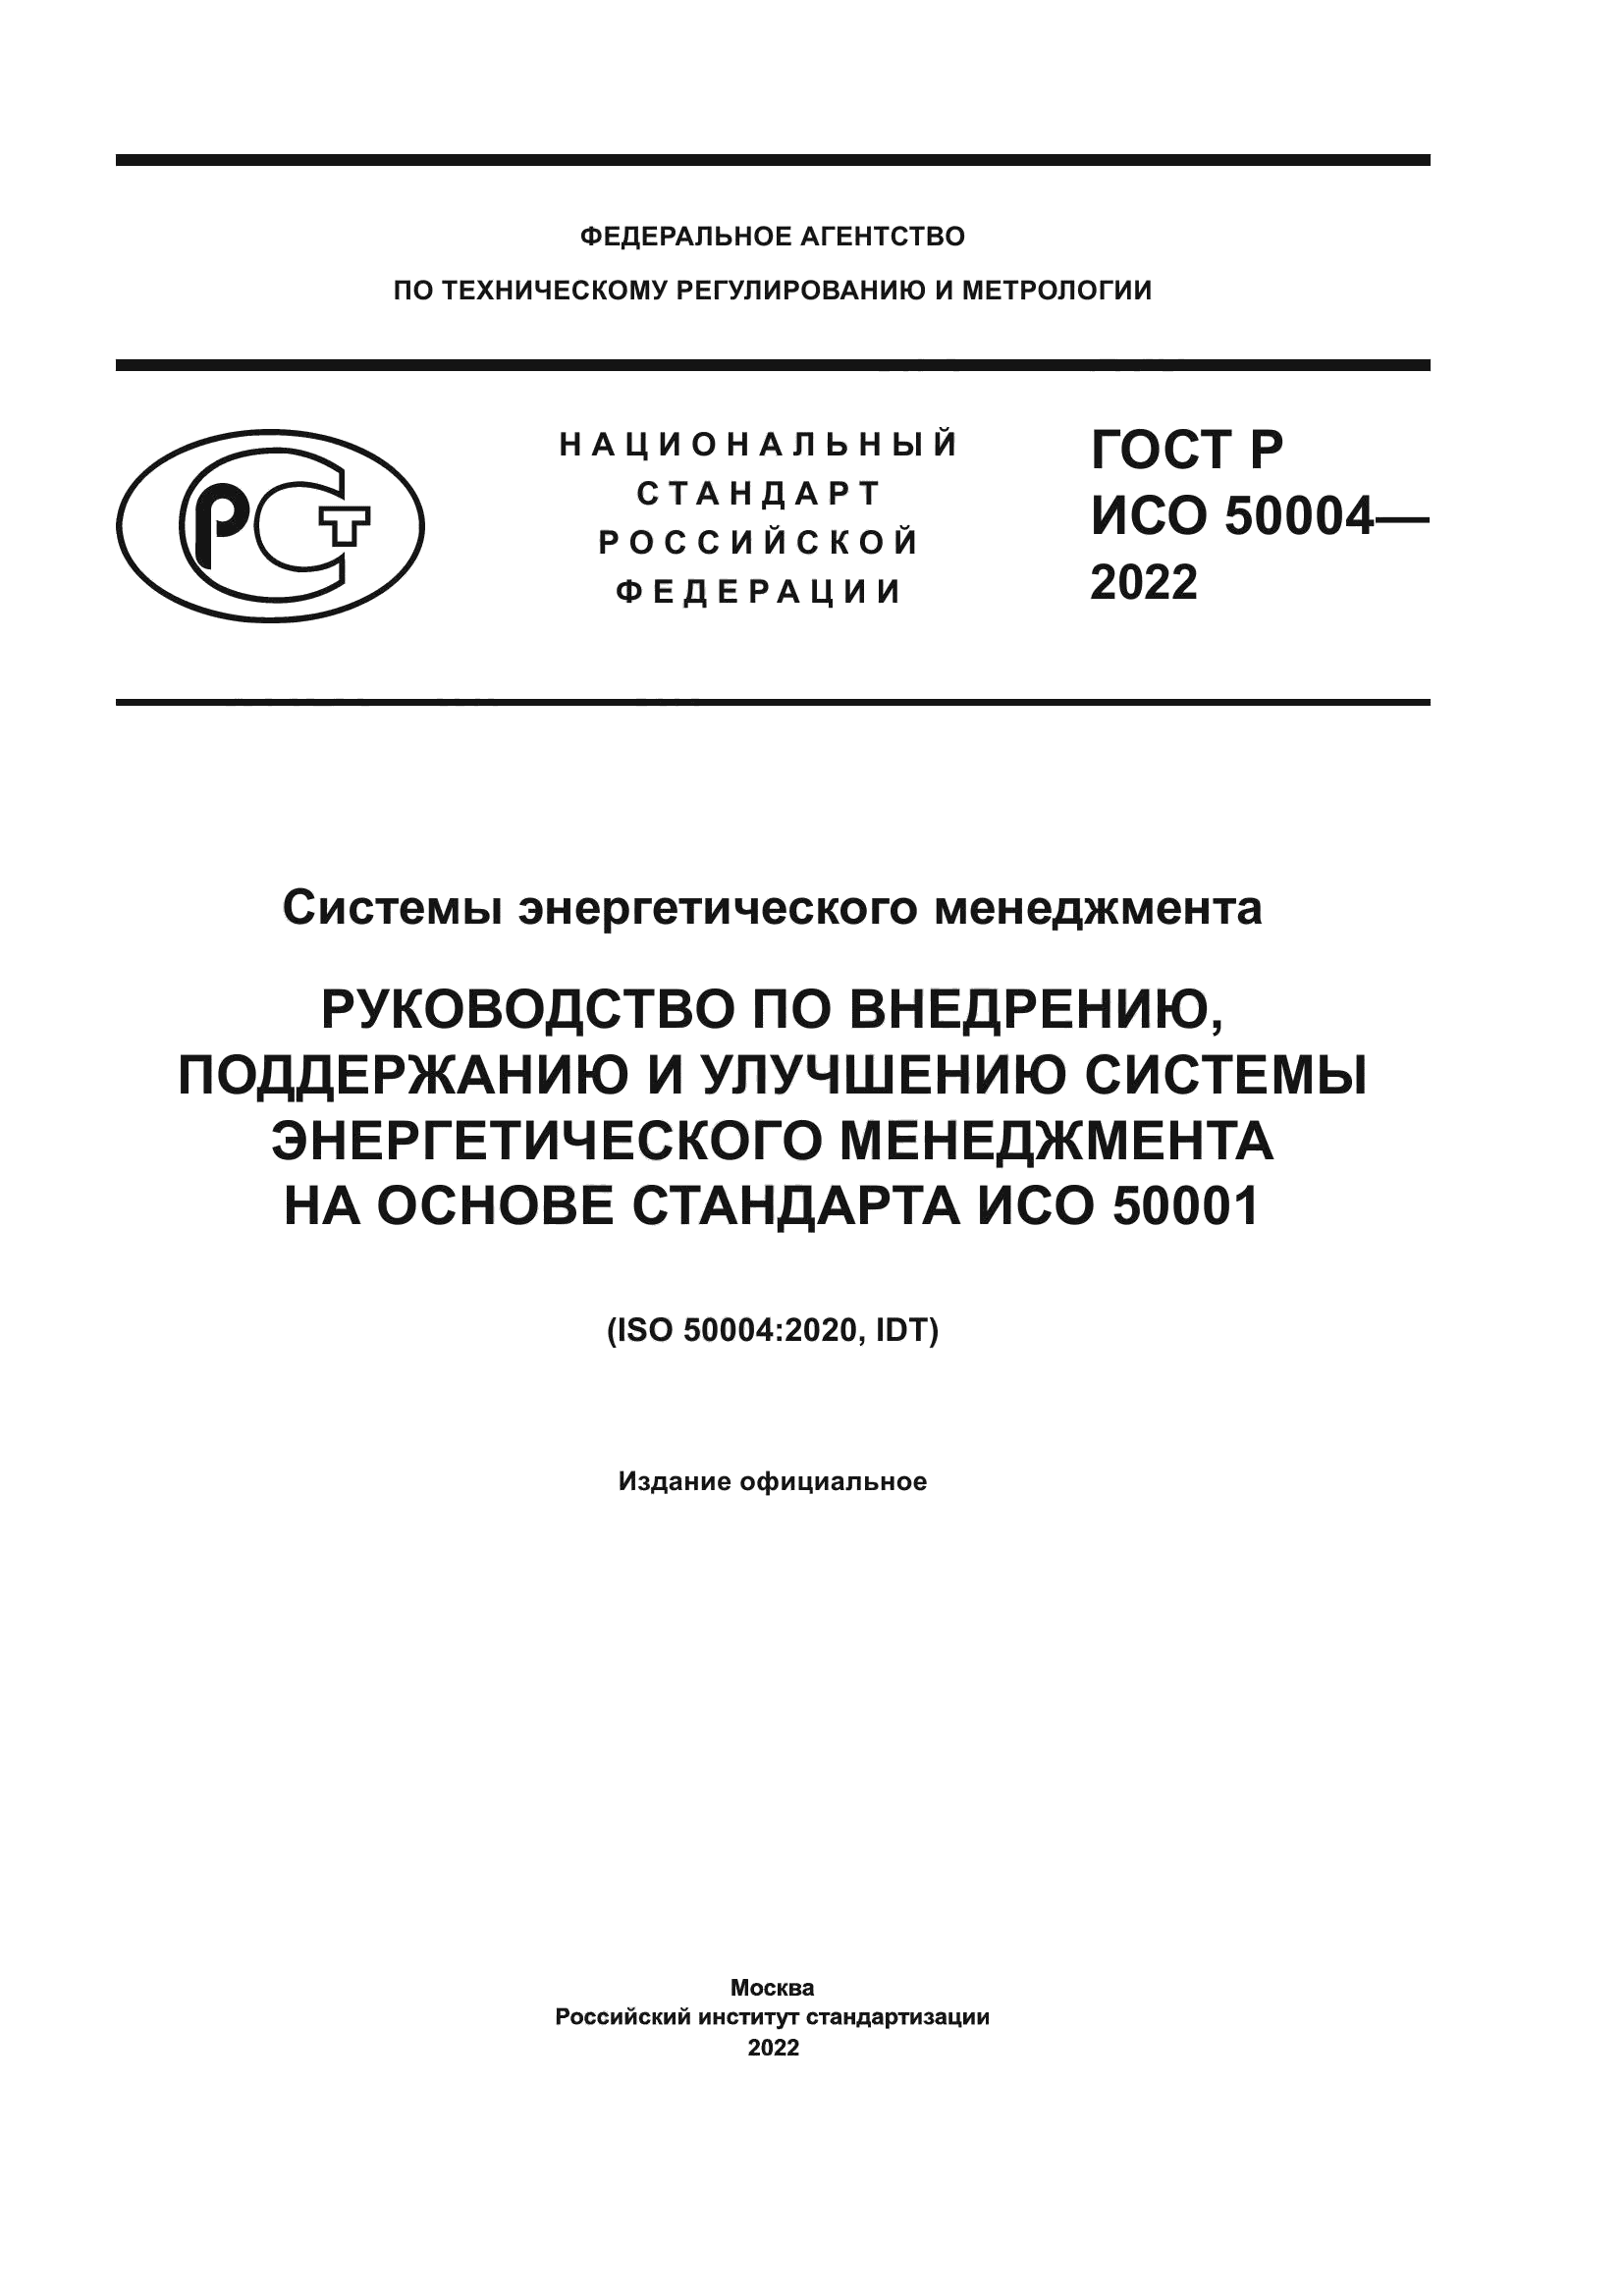 ГОСТ Р ИСО 50004-2022